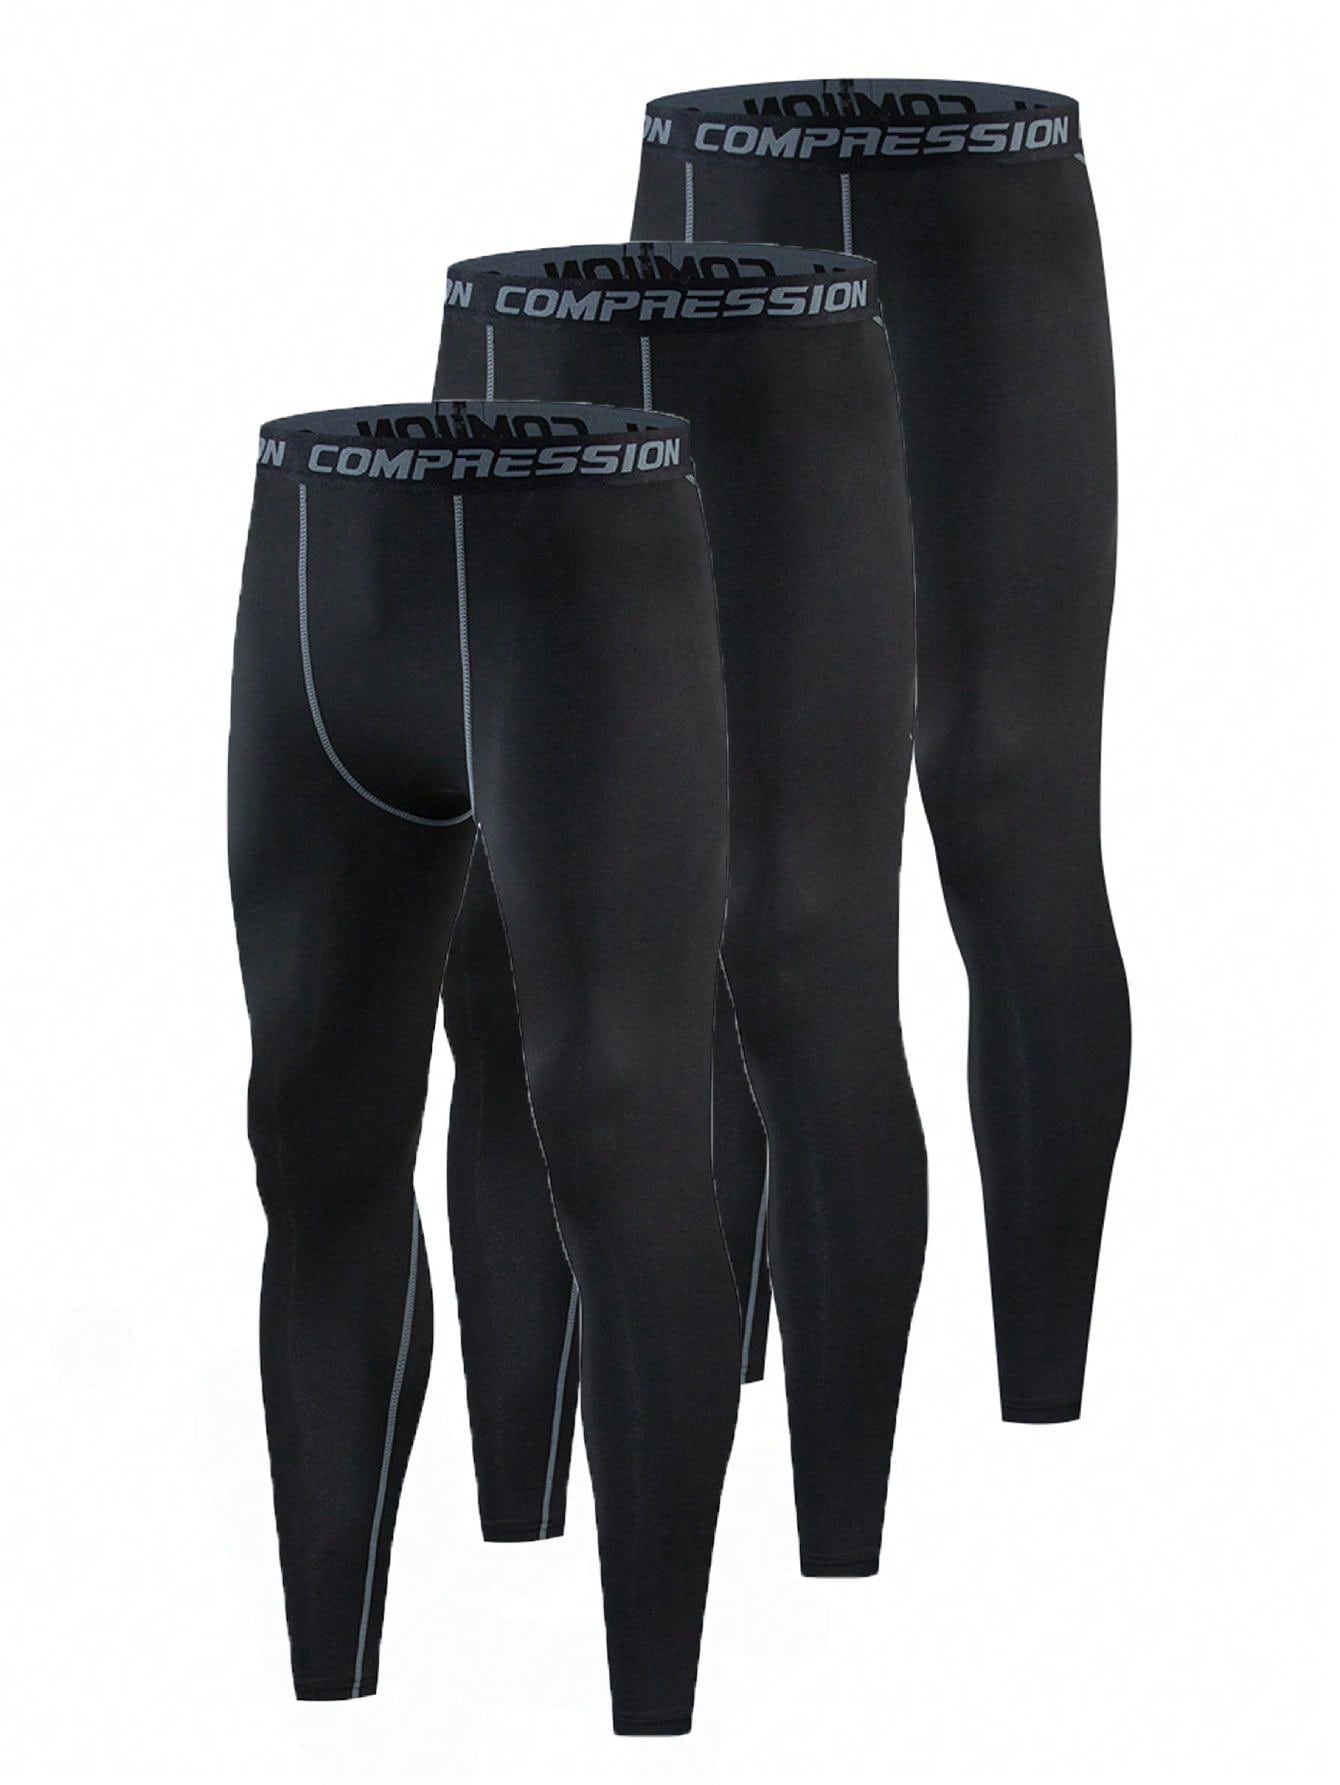 3 шт./компл. мужские компрессионные брюки для бега/фитнеса/баскетбола/велосипеда, черный